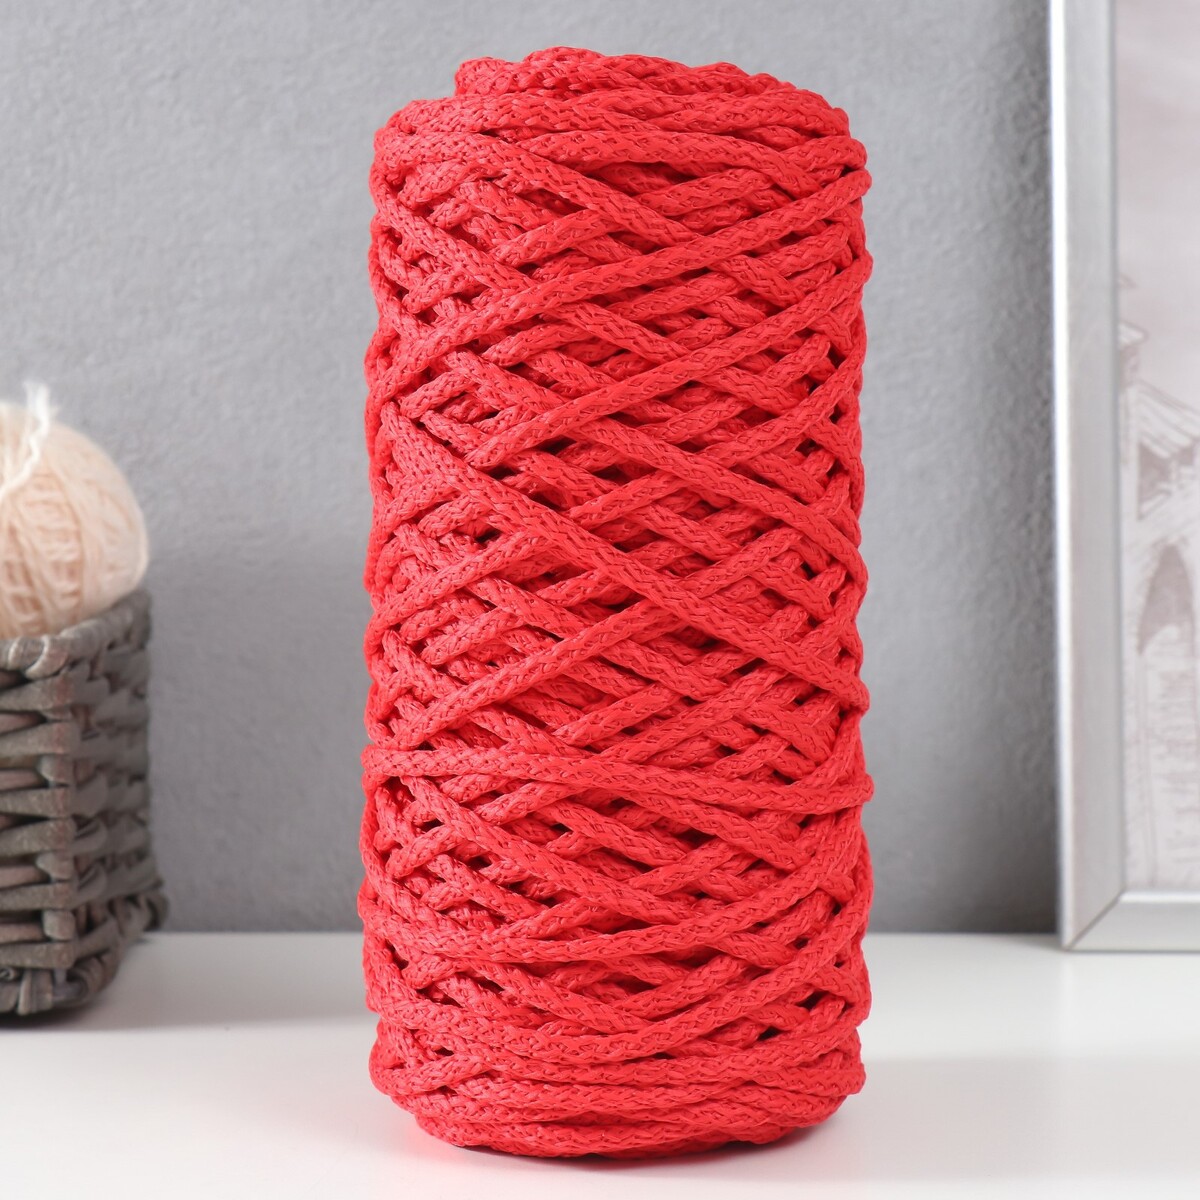 Шнур для вязания 100% полиэфир, ширина 5 мм 100м (красный) шнур для вязания 100% полиэфир ширина 3 мм 100м оливковый